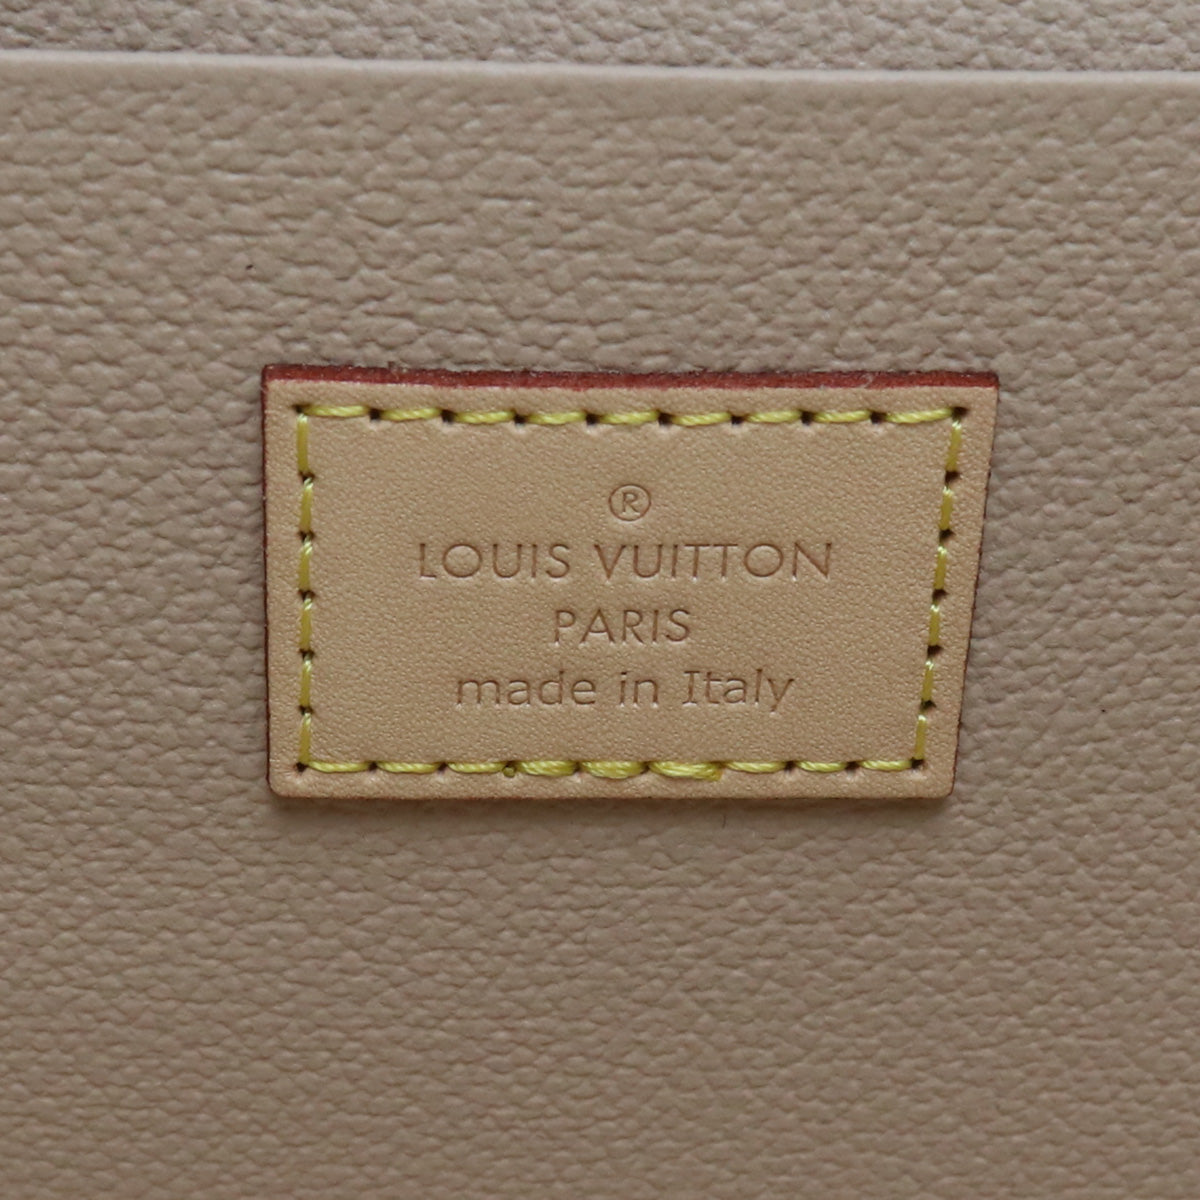 LOUIS VUITTON ルイヴィトン ニースBB モノグラム M42265 バニティ-バッグ PVC【中古】 ユニセックス